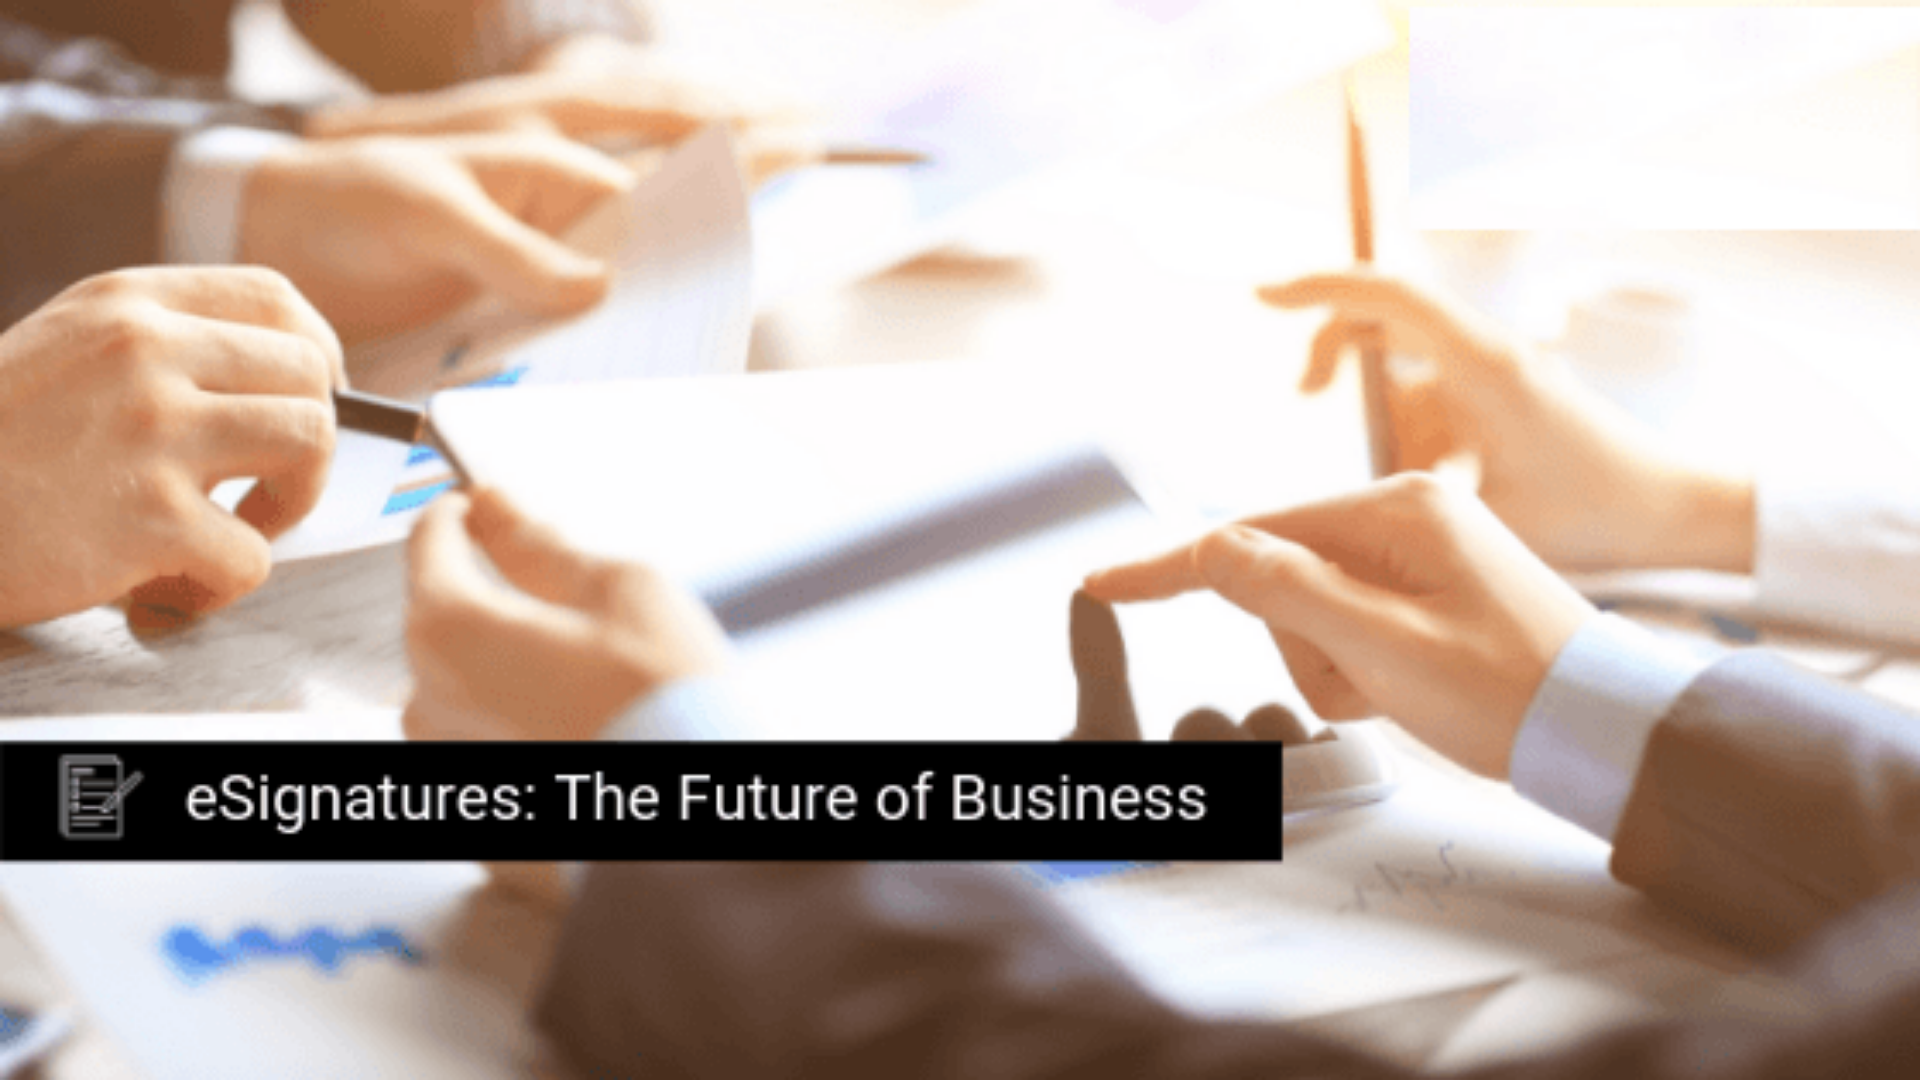 eSignatures - The Future of Business